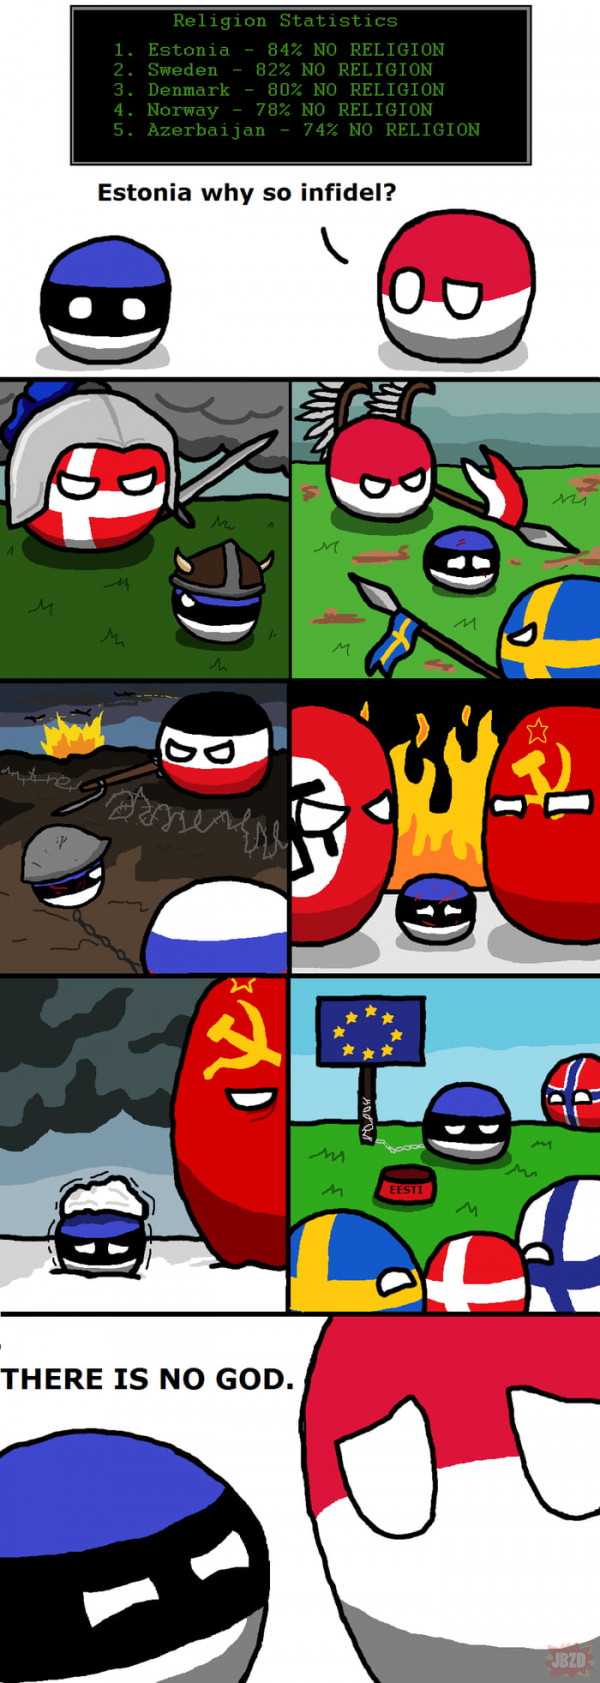 Estonia to taka Polska 2.0, zawsze dostaje po dupie